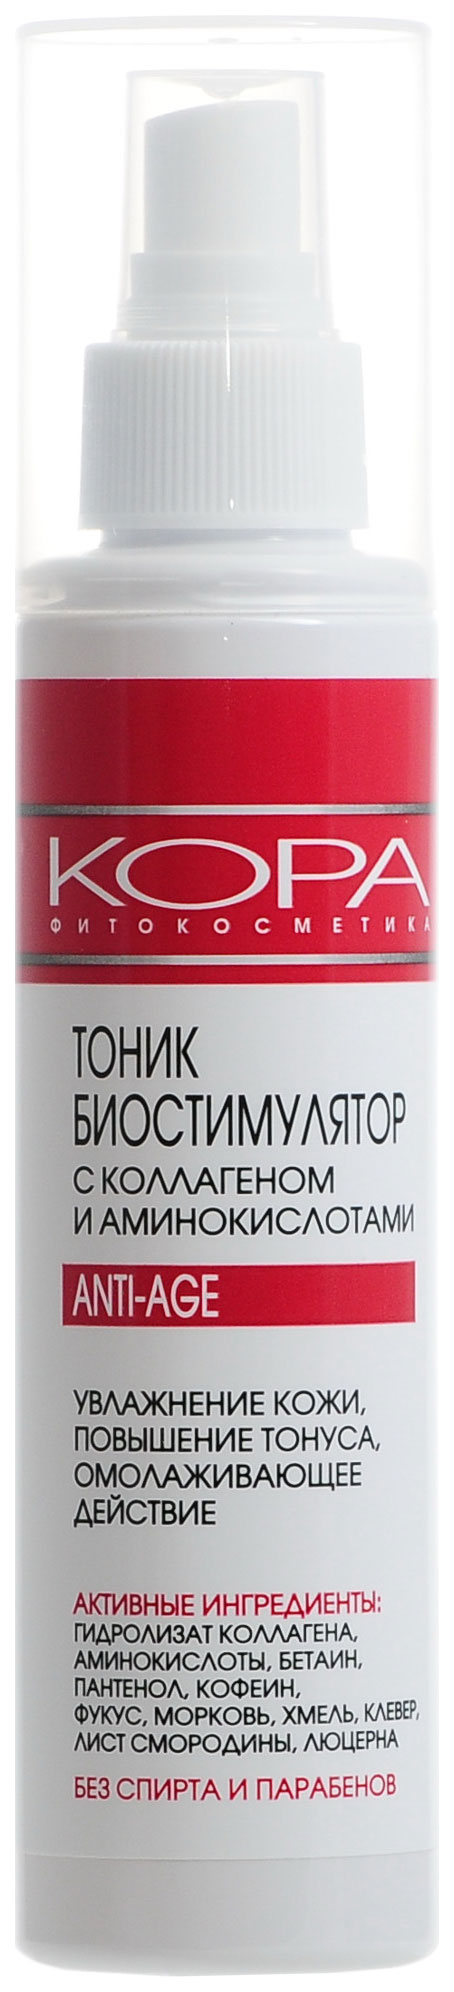 Тоник для лица Kora С коллагеном и аминокислотами 150 мл тоник kora биостимулятор с коллагеном и аминокислотами 130 мл